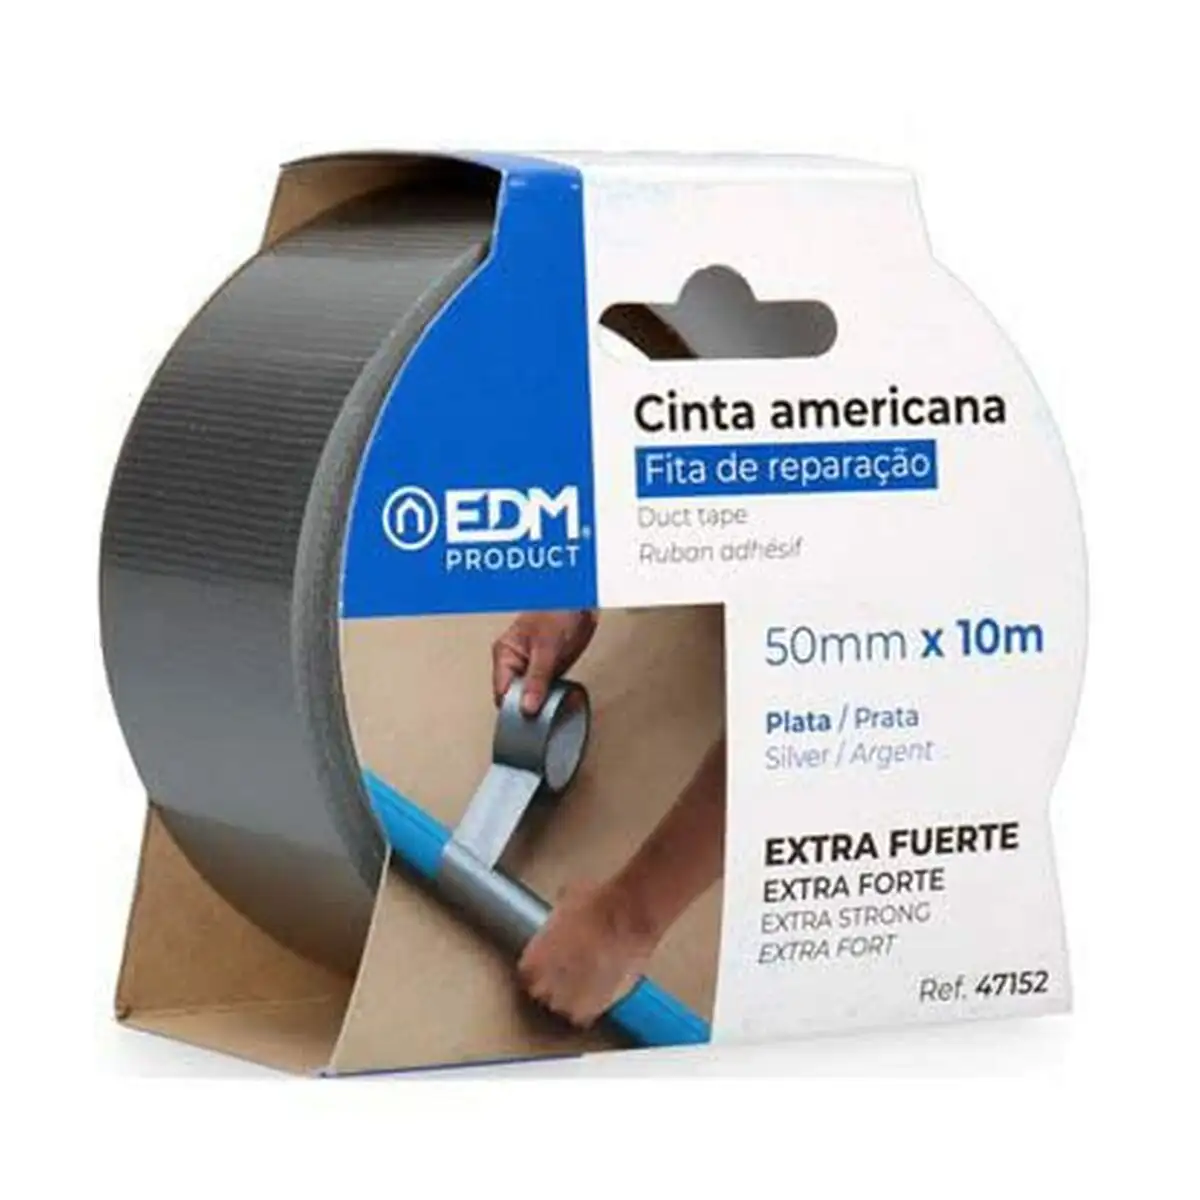 Ruban adhesif edm gris 50 mm x 10 m _6192. DIAYTAR SENEGAL - Votre Portail Vers l'Exclusivité. Explorez notre boutique en ligne pour trouver des produits uniques et exclusifs, conçus pour les amateurs de qualité.